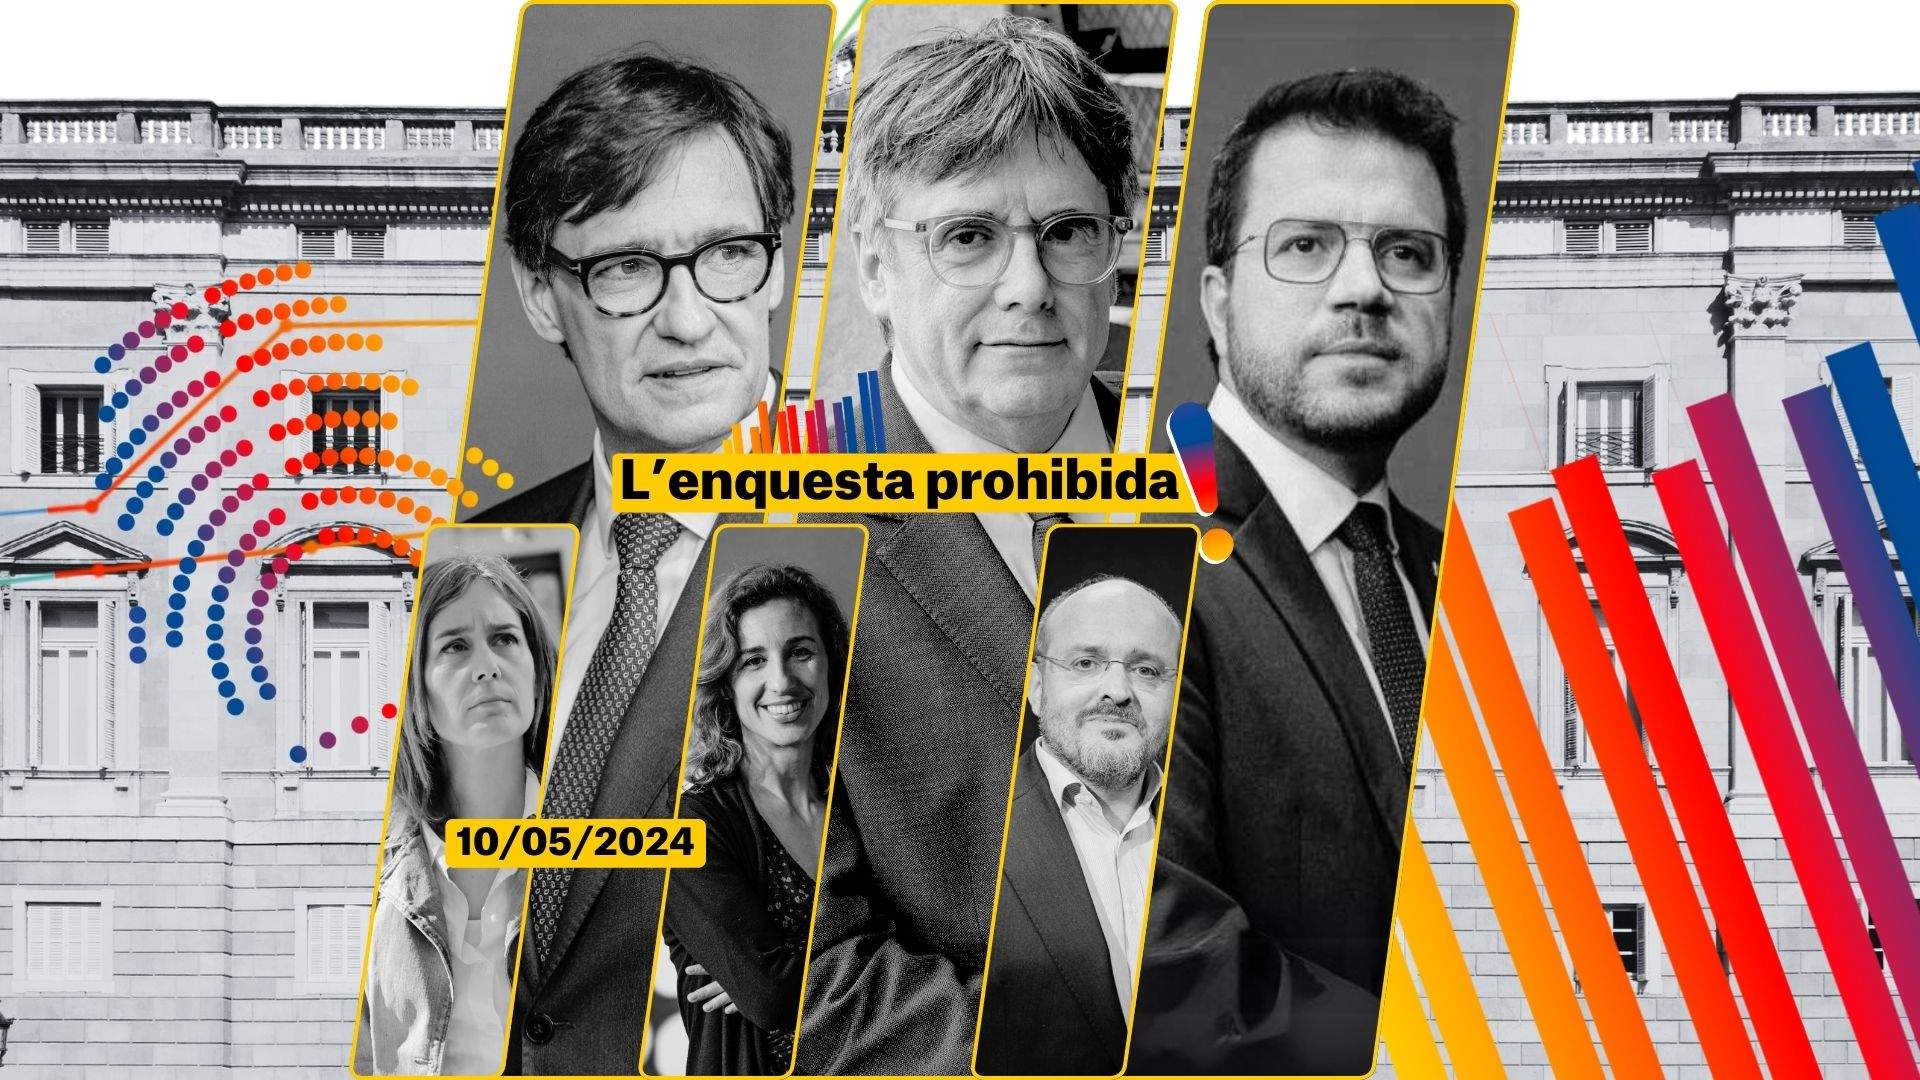 Enquesta eleccions Catalunya 2024   Enquesta prohibida 10 maig